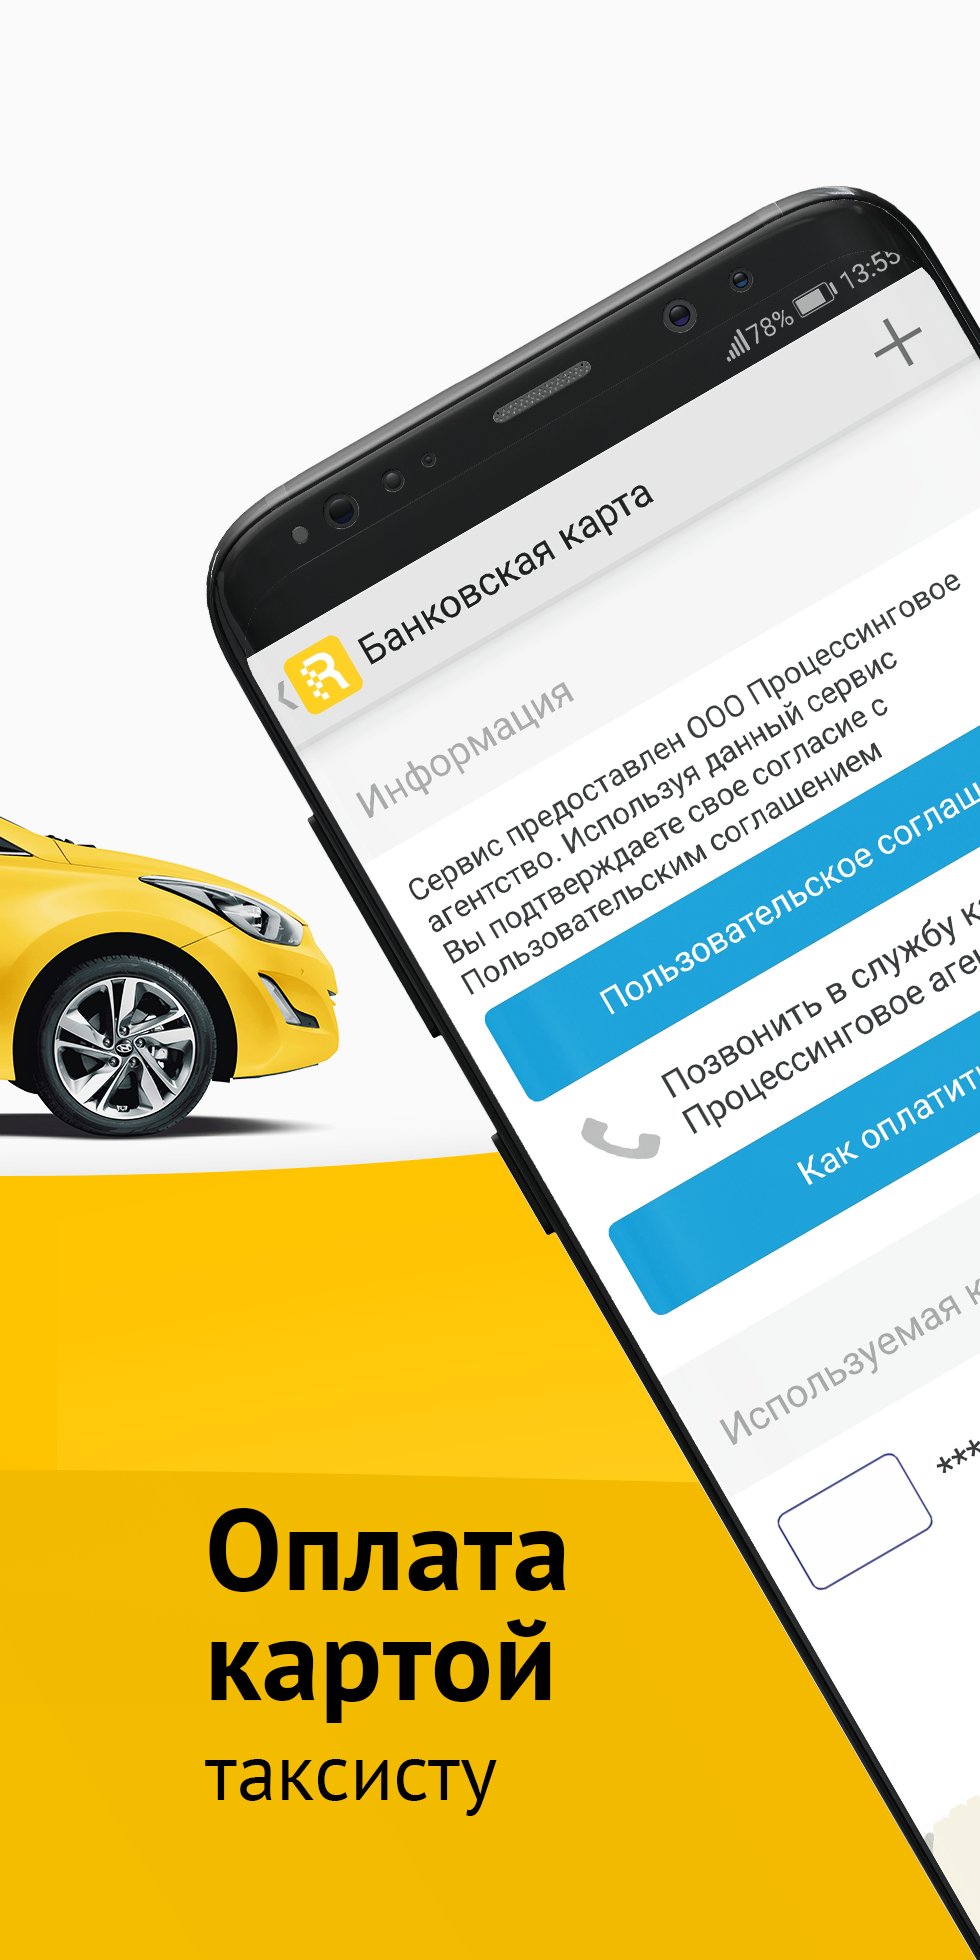 Обновить приложение такси. Приложение такси. Мобильное приложение такси. Приложение для таксистов. Такси клиентское приложения.